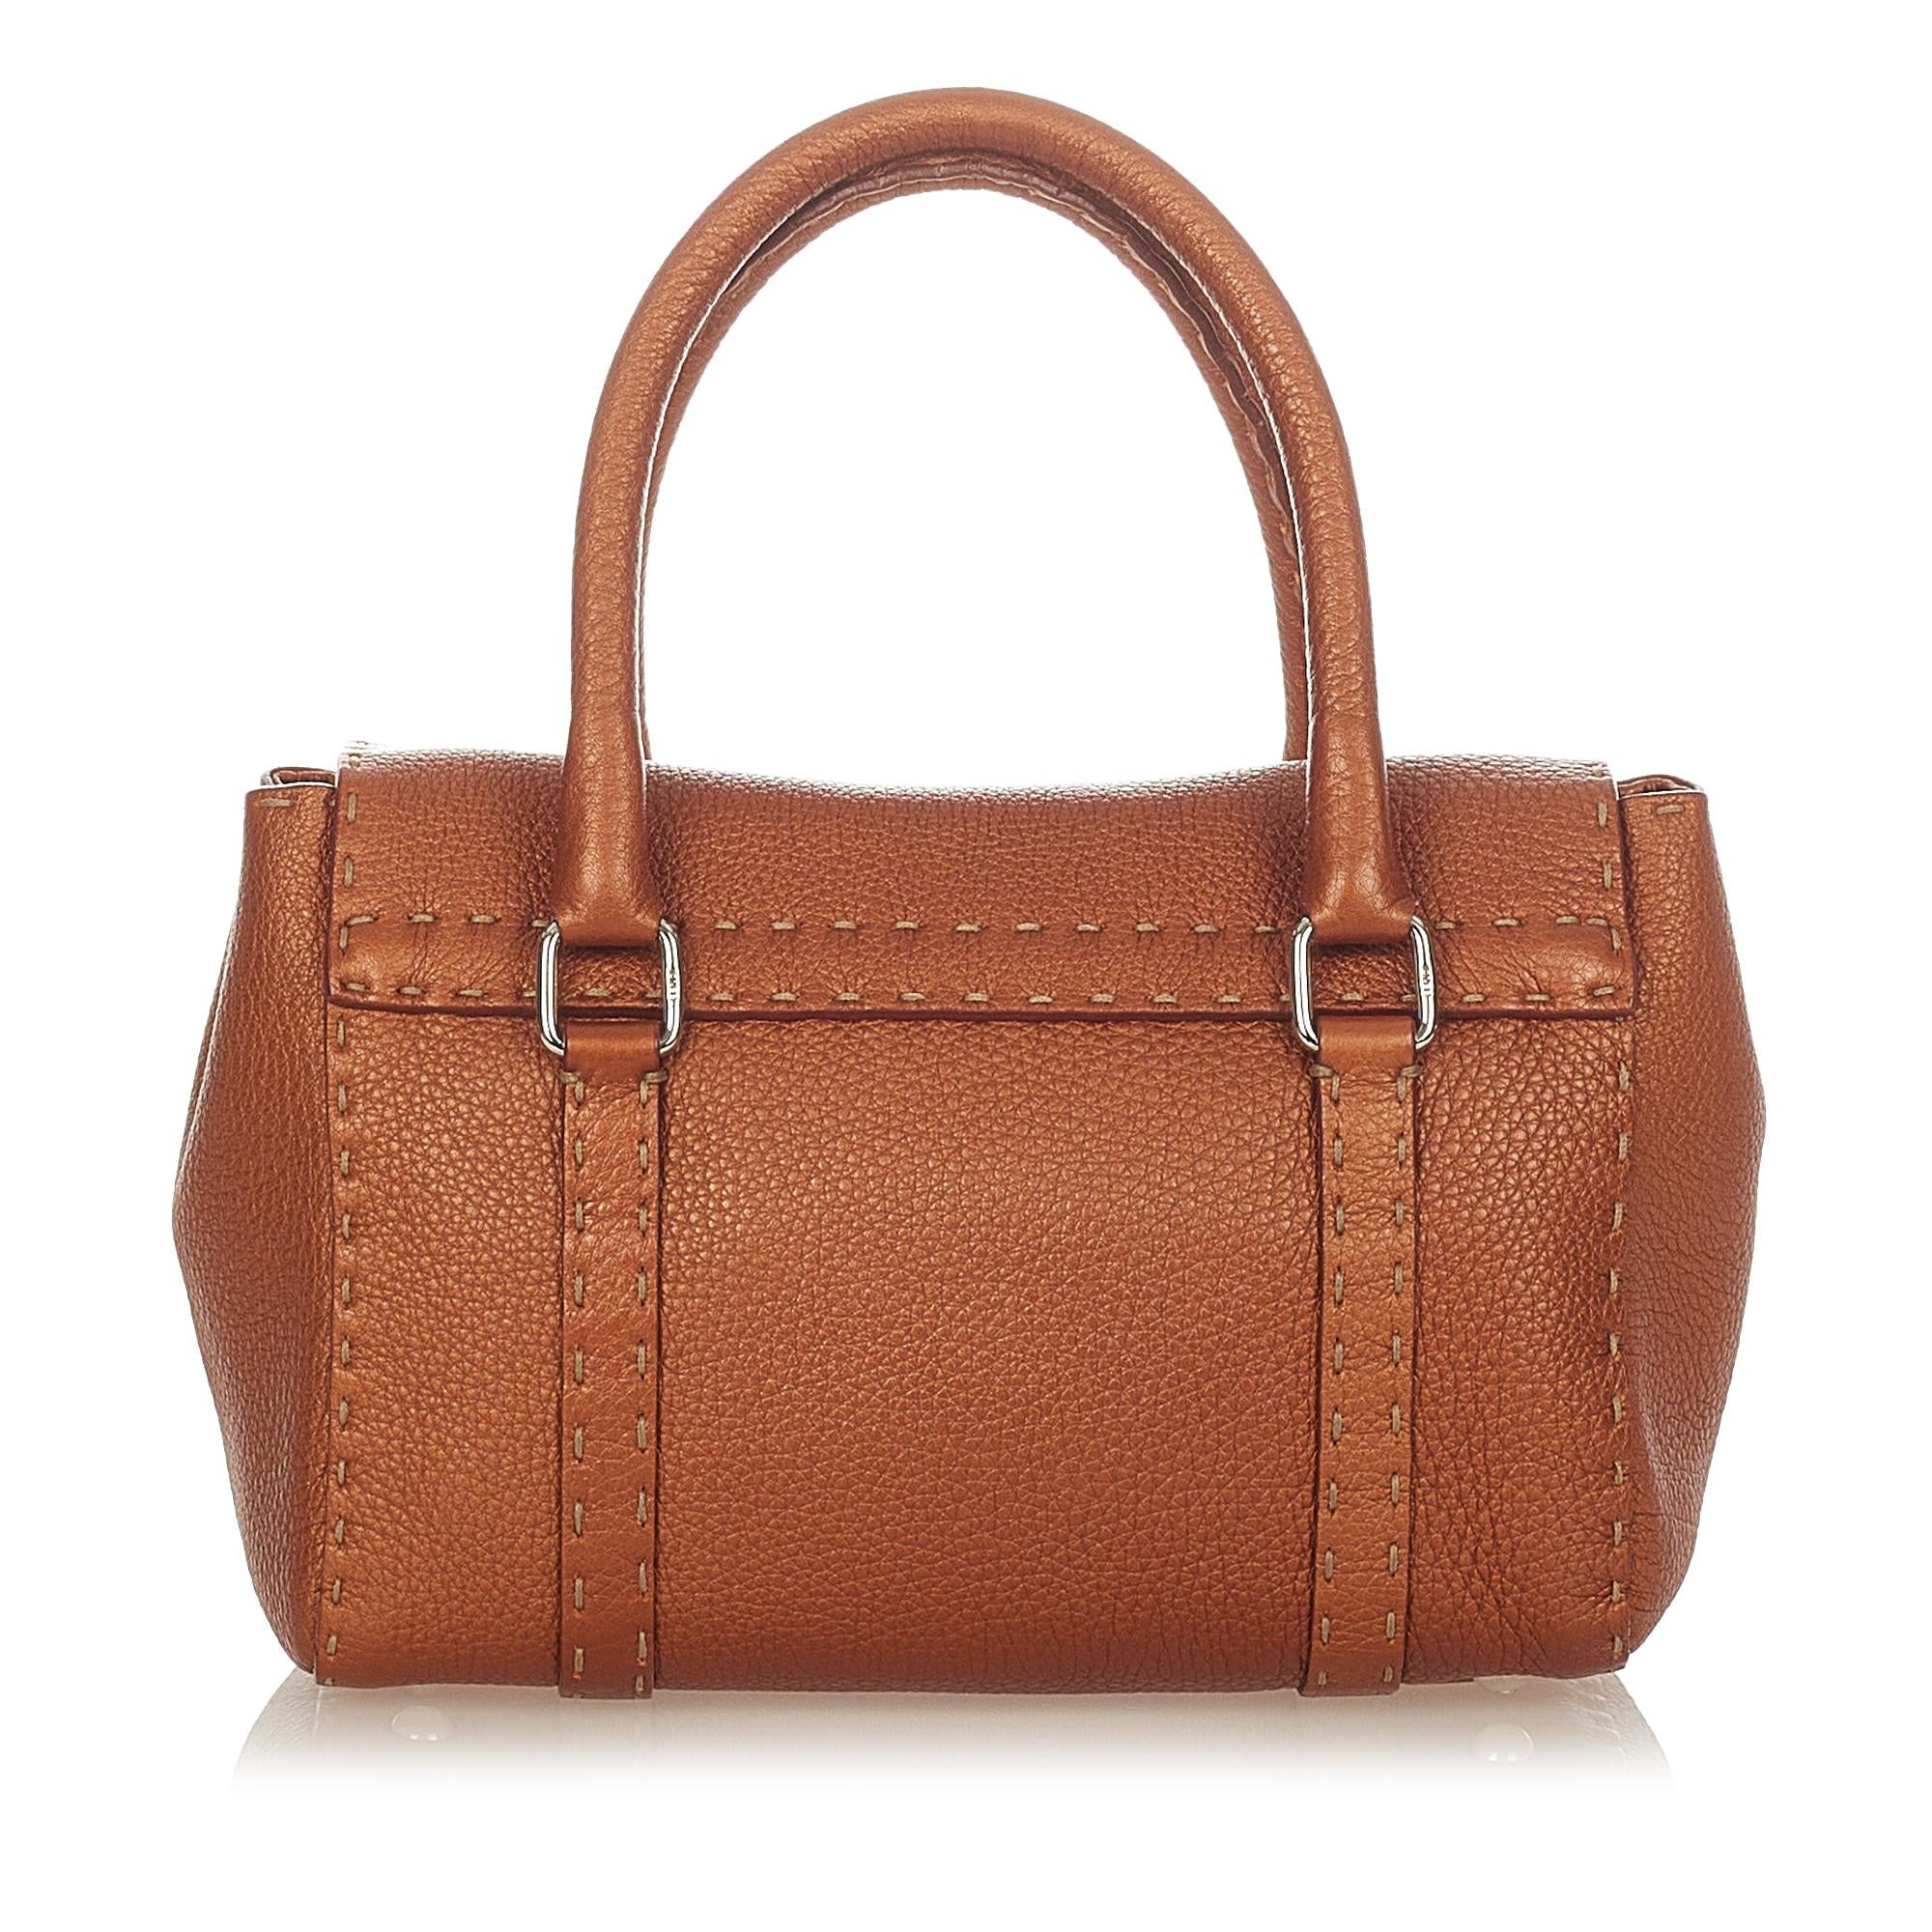 Fendi Selleria Linda Leather Handbag